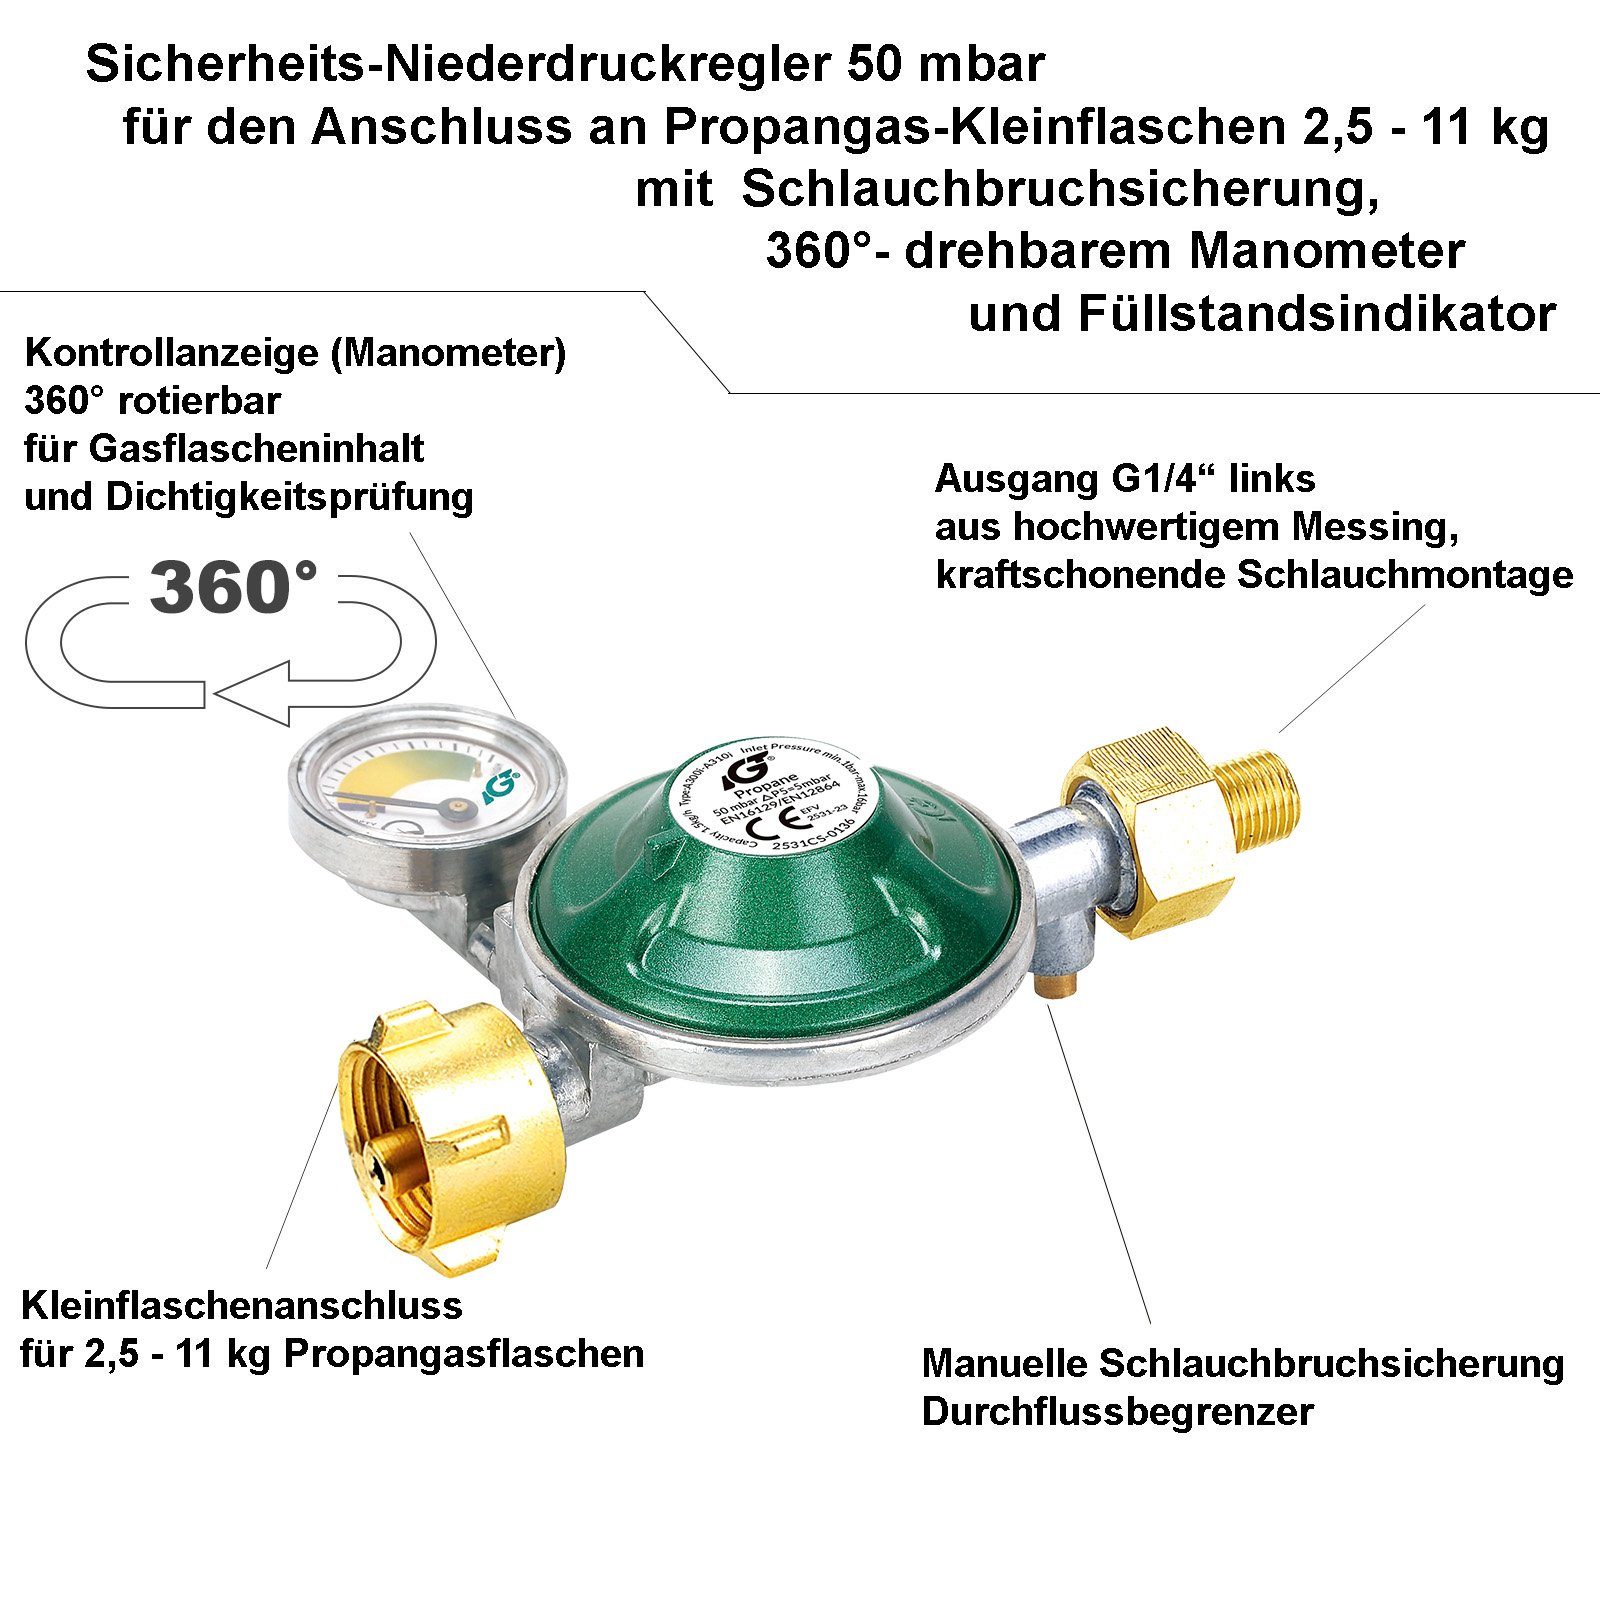 BlueCraft Gaskocher, mbar Gasherd 50 (inkl. Gasschlauch Manometerregler), 2-flammig, Campingkocher und